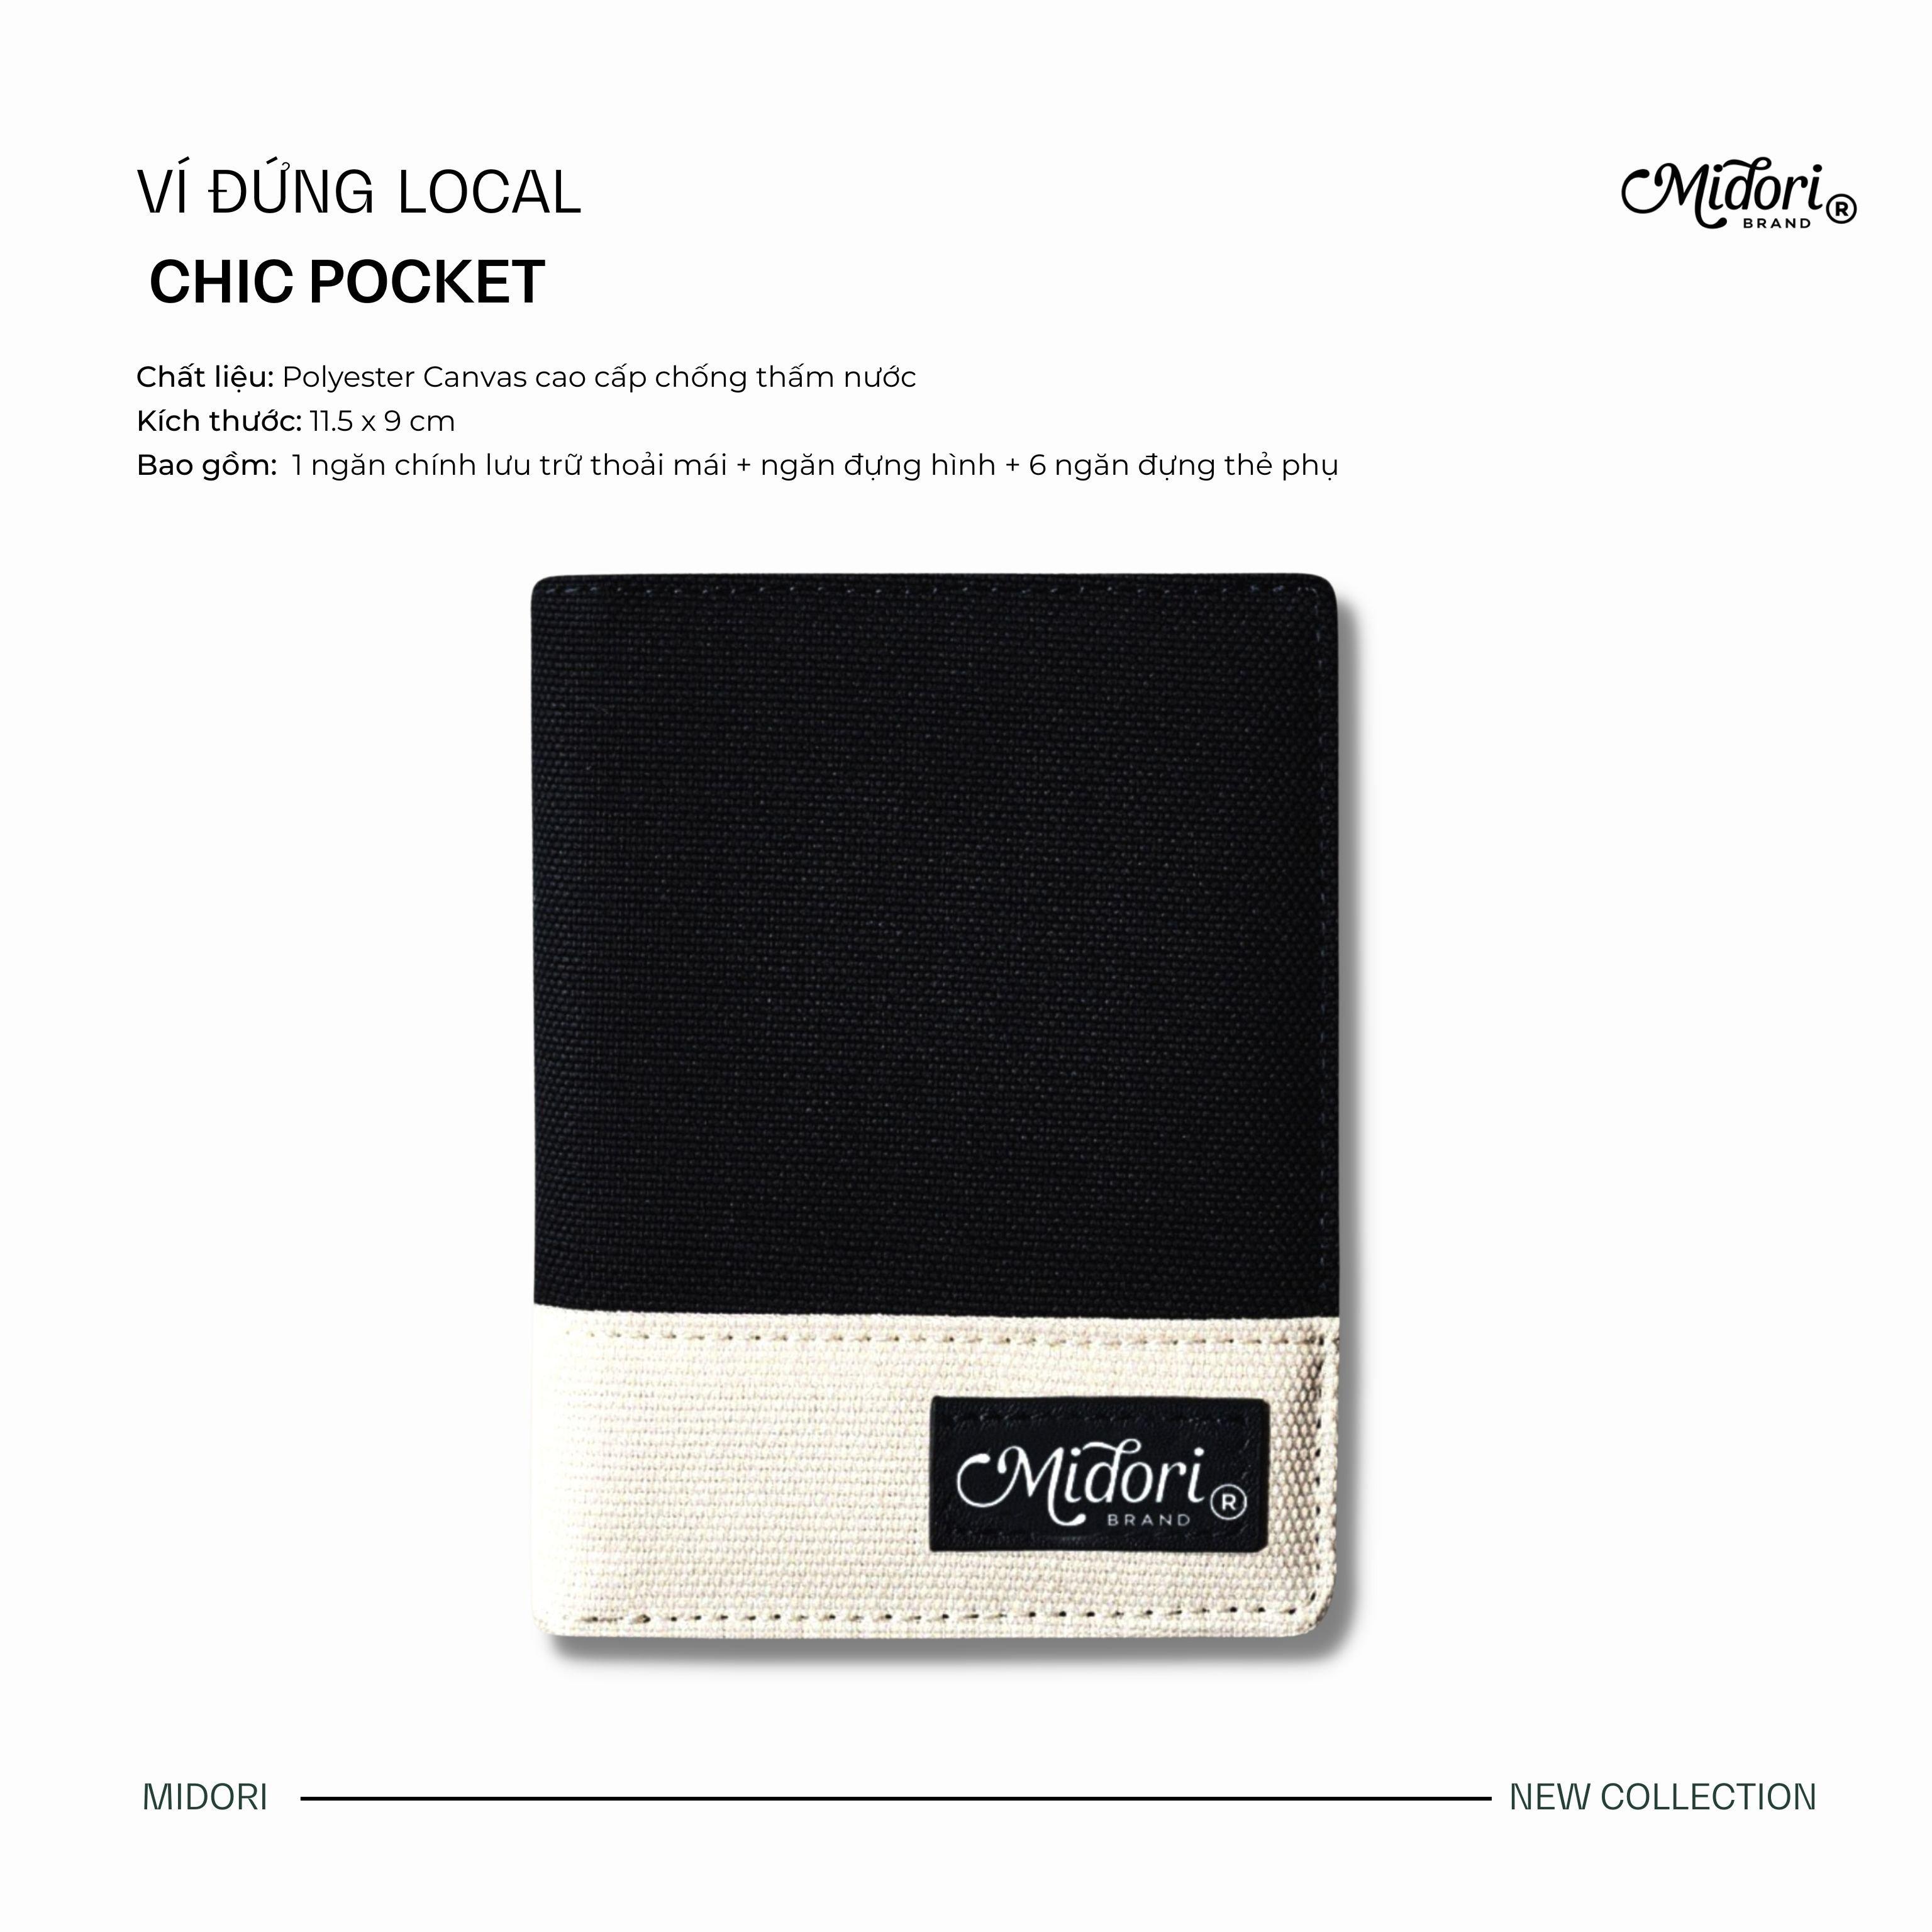 Ví Vải Đứng Nam Nữ Polyester Chic Pocket s2 Siêu Bền Đẹp Chống Nước Unisex local brand chính hãng Midori M Studio